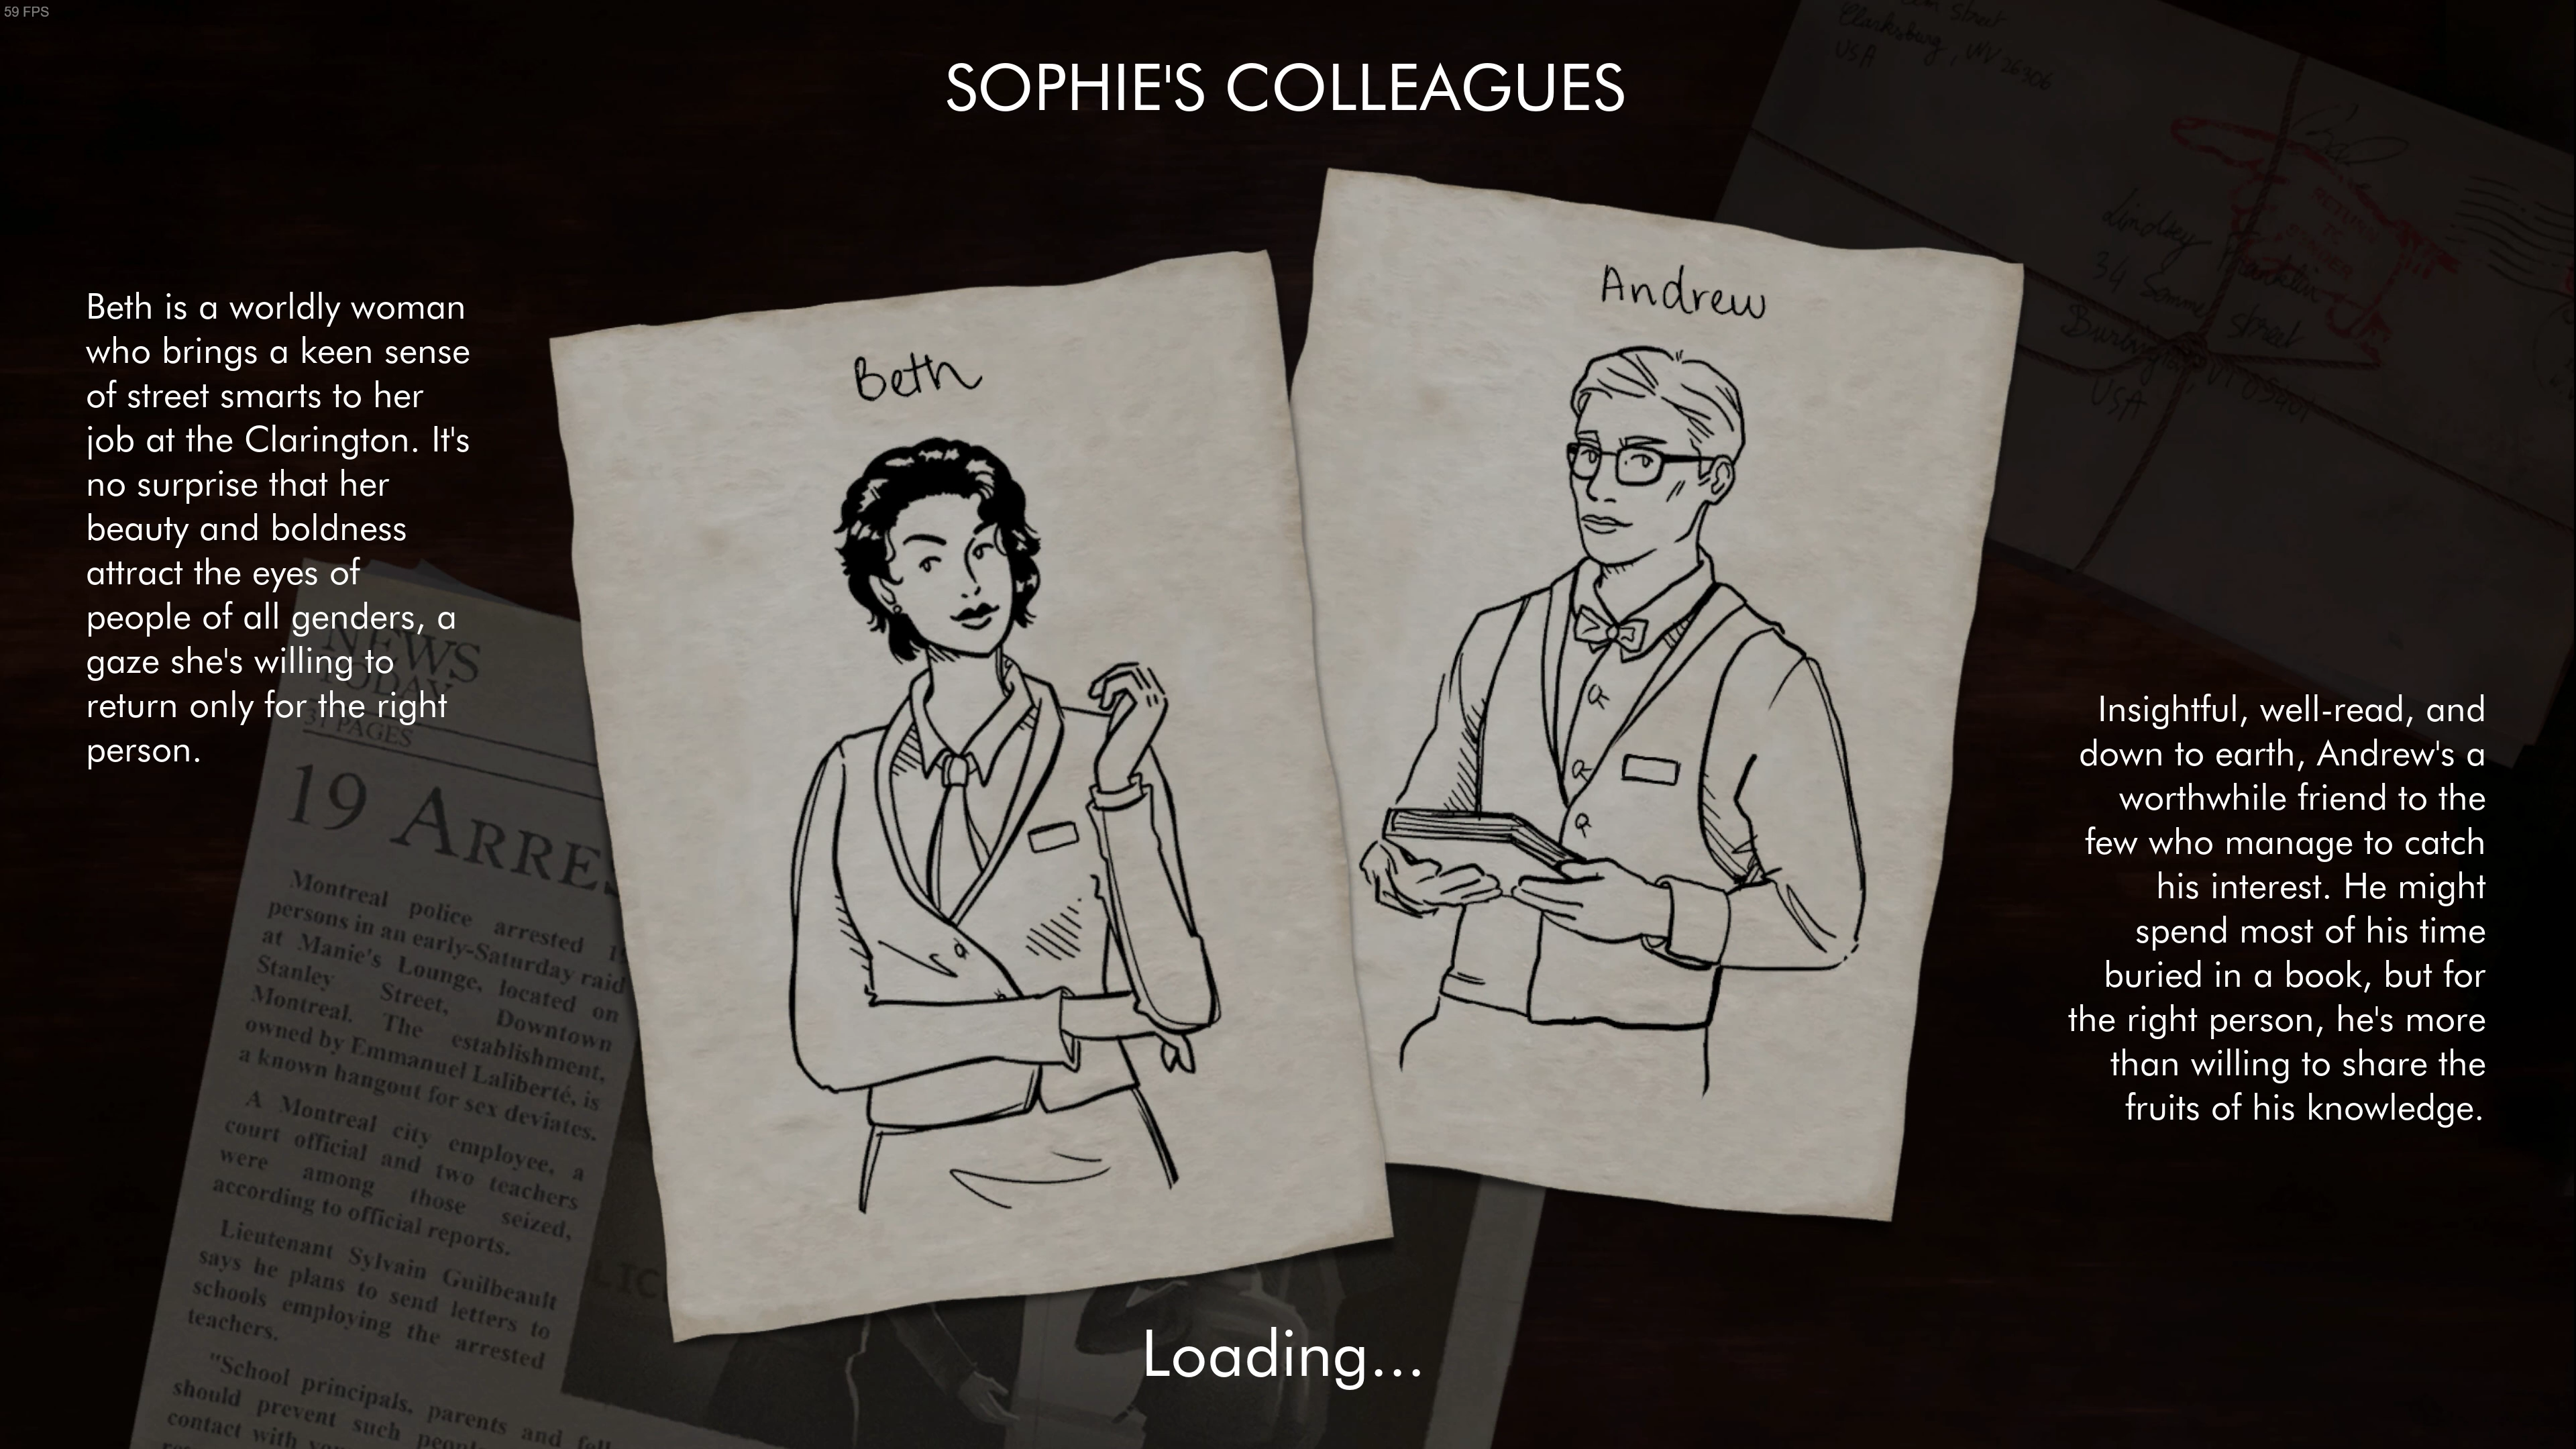 游戏对各个配角有一定程度的描写，在demo中苏菲可以选择打电话向男同事\女同事求助